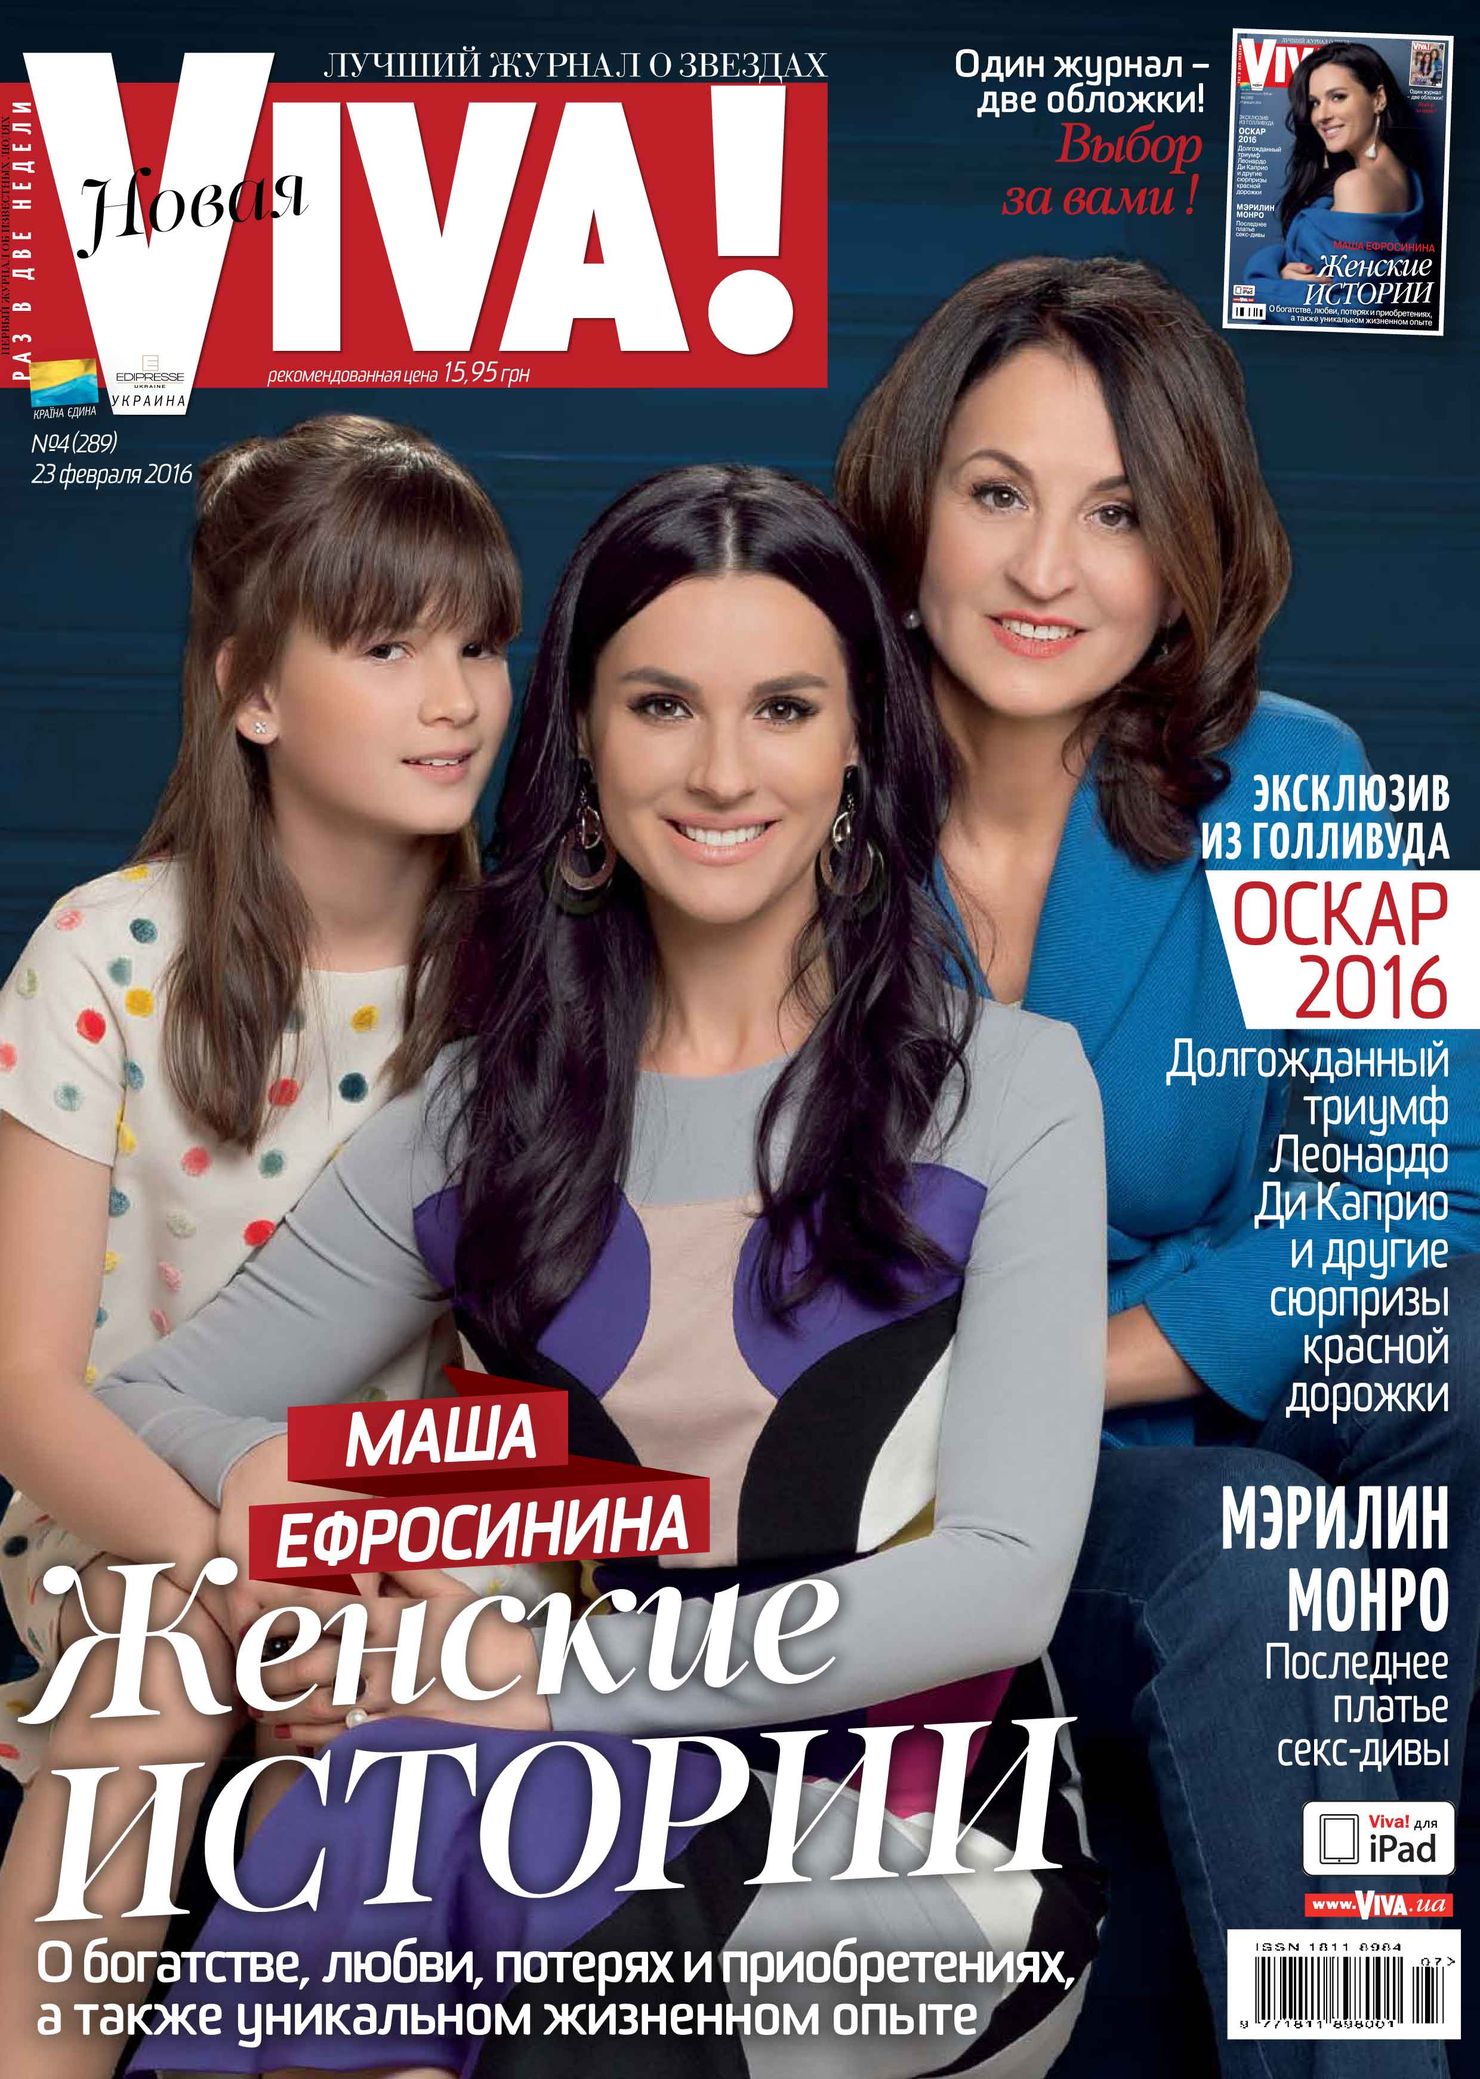 Маша Ефросинина на обложке журнала Viva!